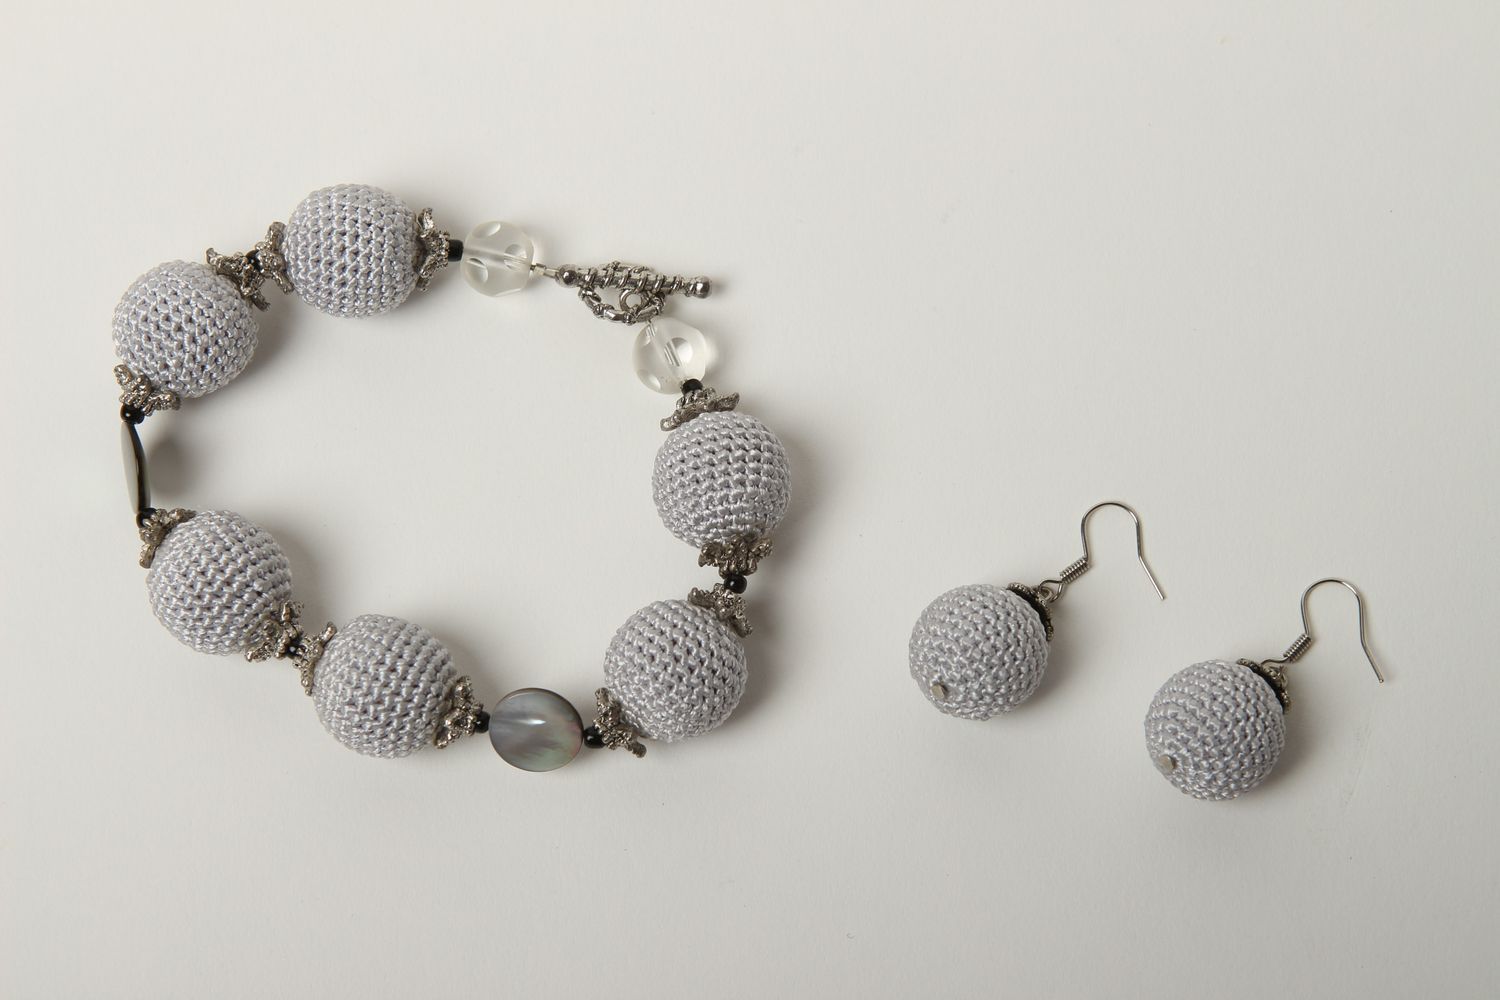 Handmade bracelet designer earrings unusual jewelry set gift for women photo 2